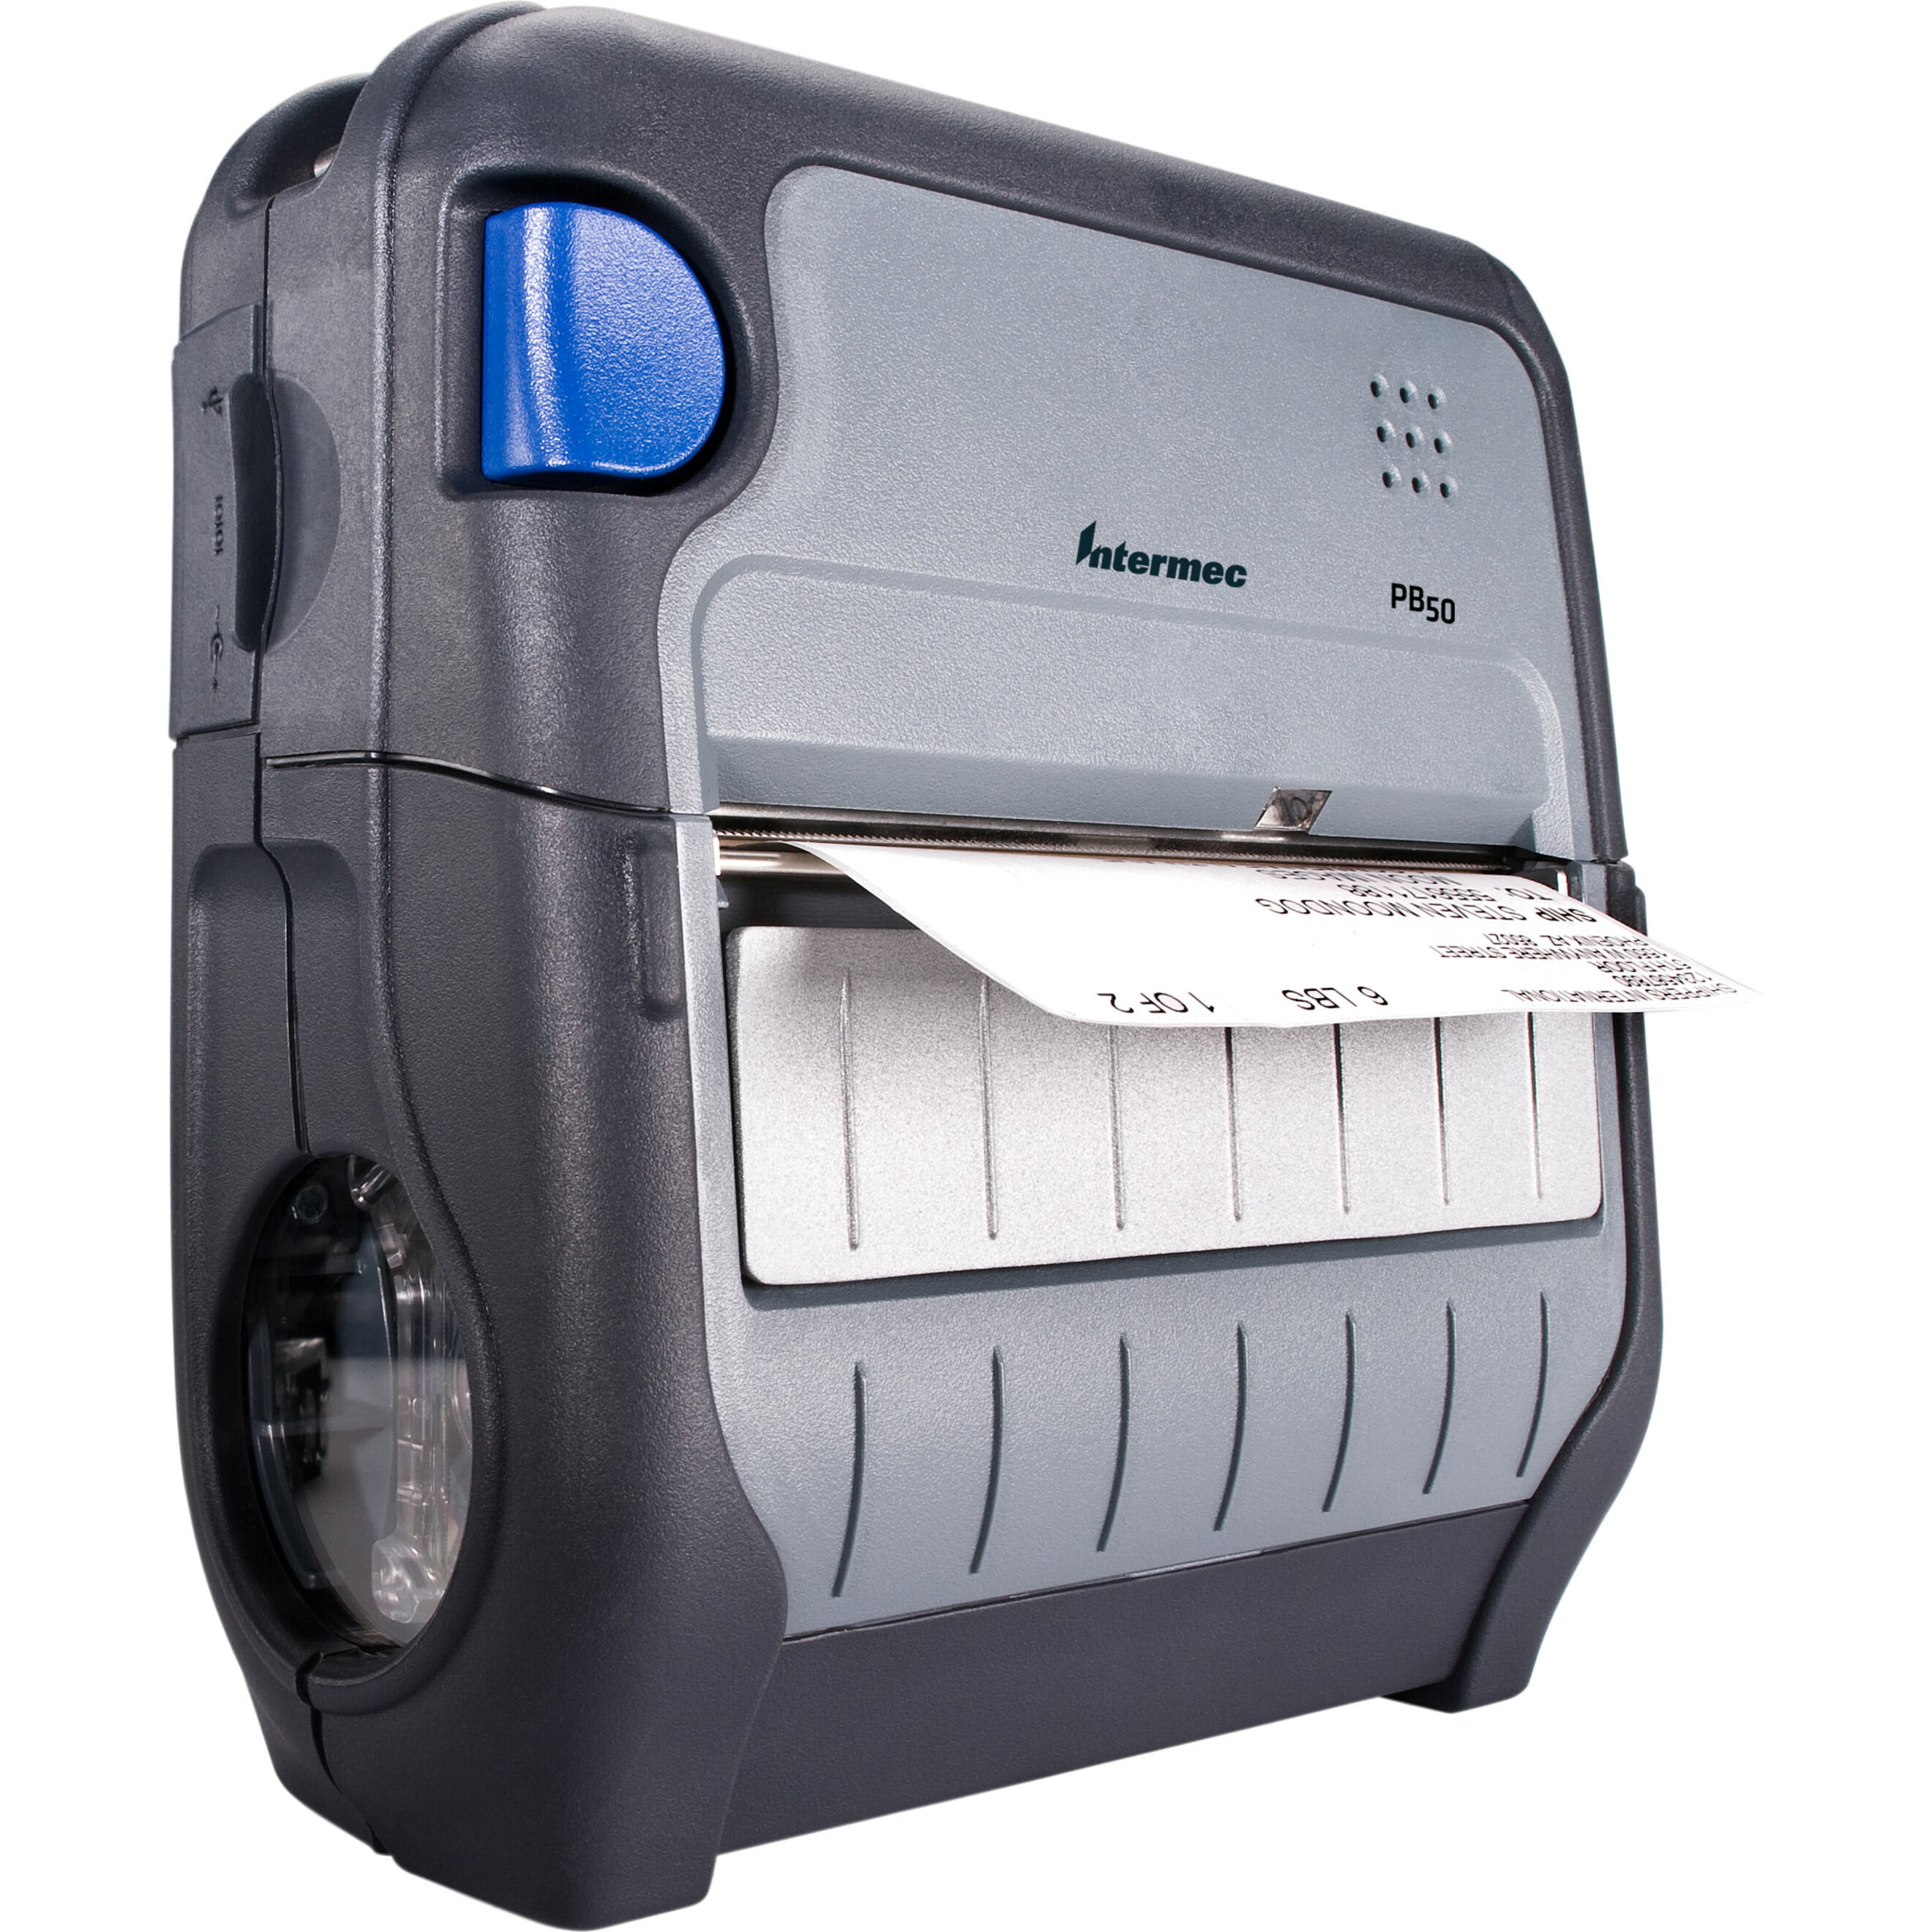 Intermec PB50 or PB51 Mobile Printer Repair Service Any Model 